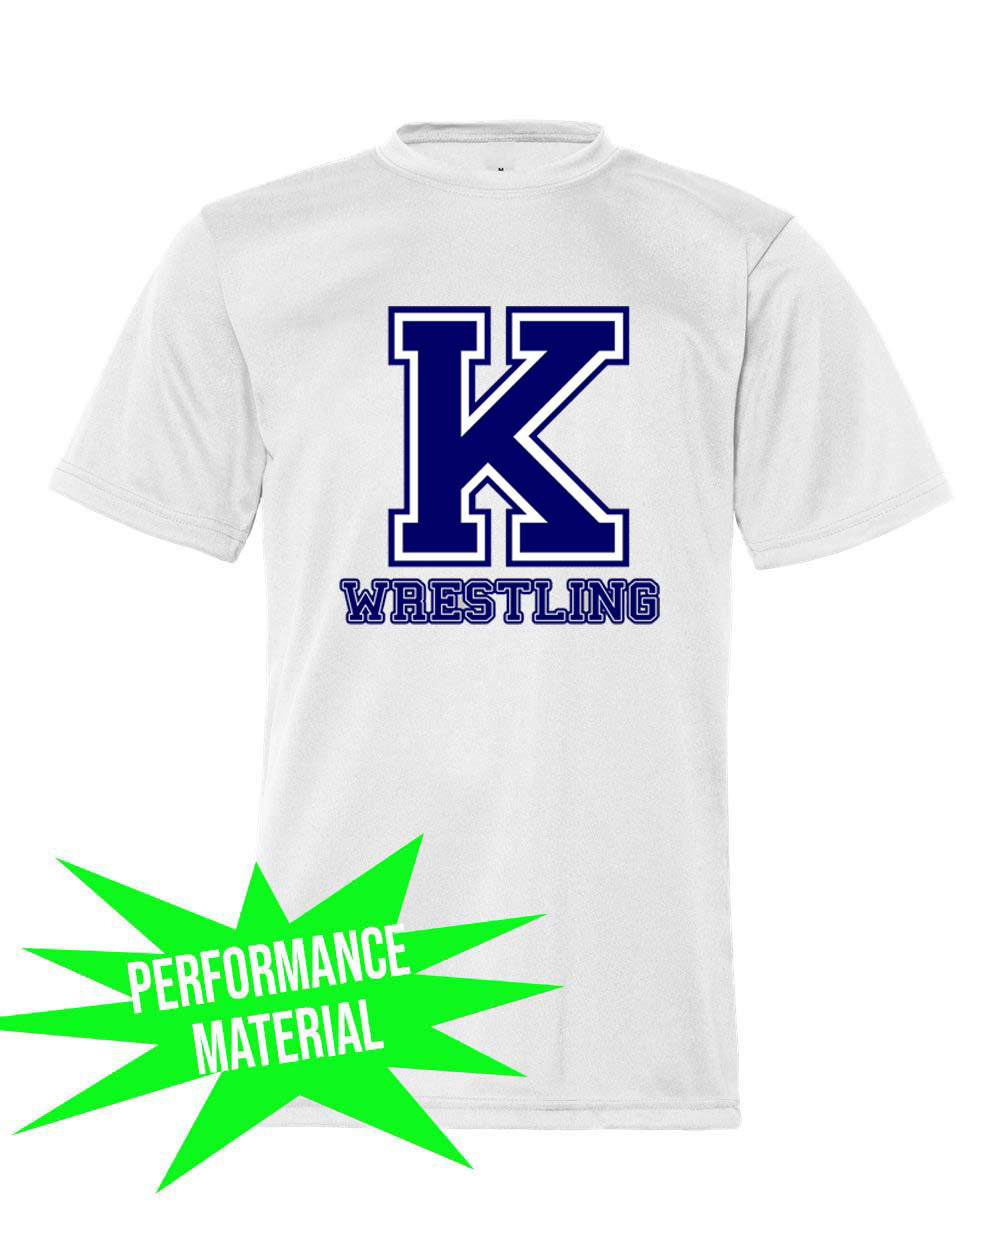 Kittatinny Wrestling Performance Material T-Shirt Design 6